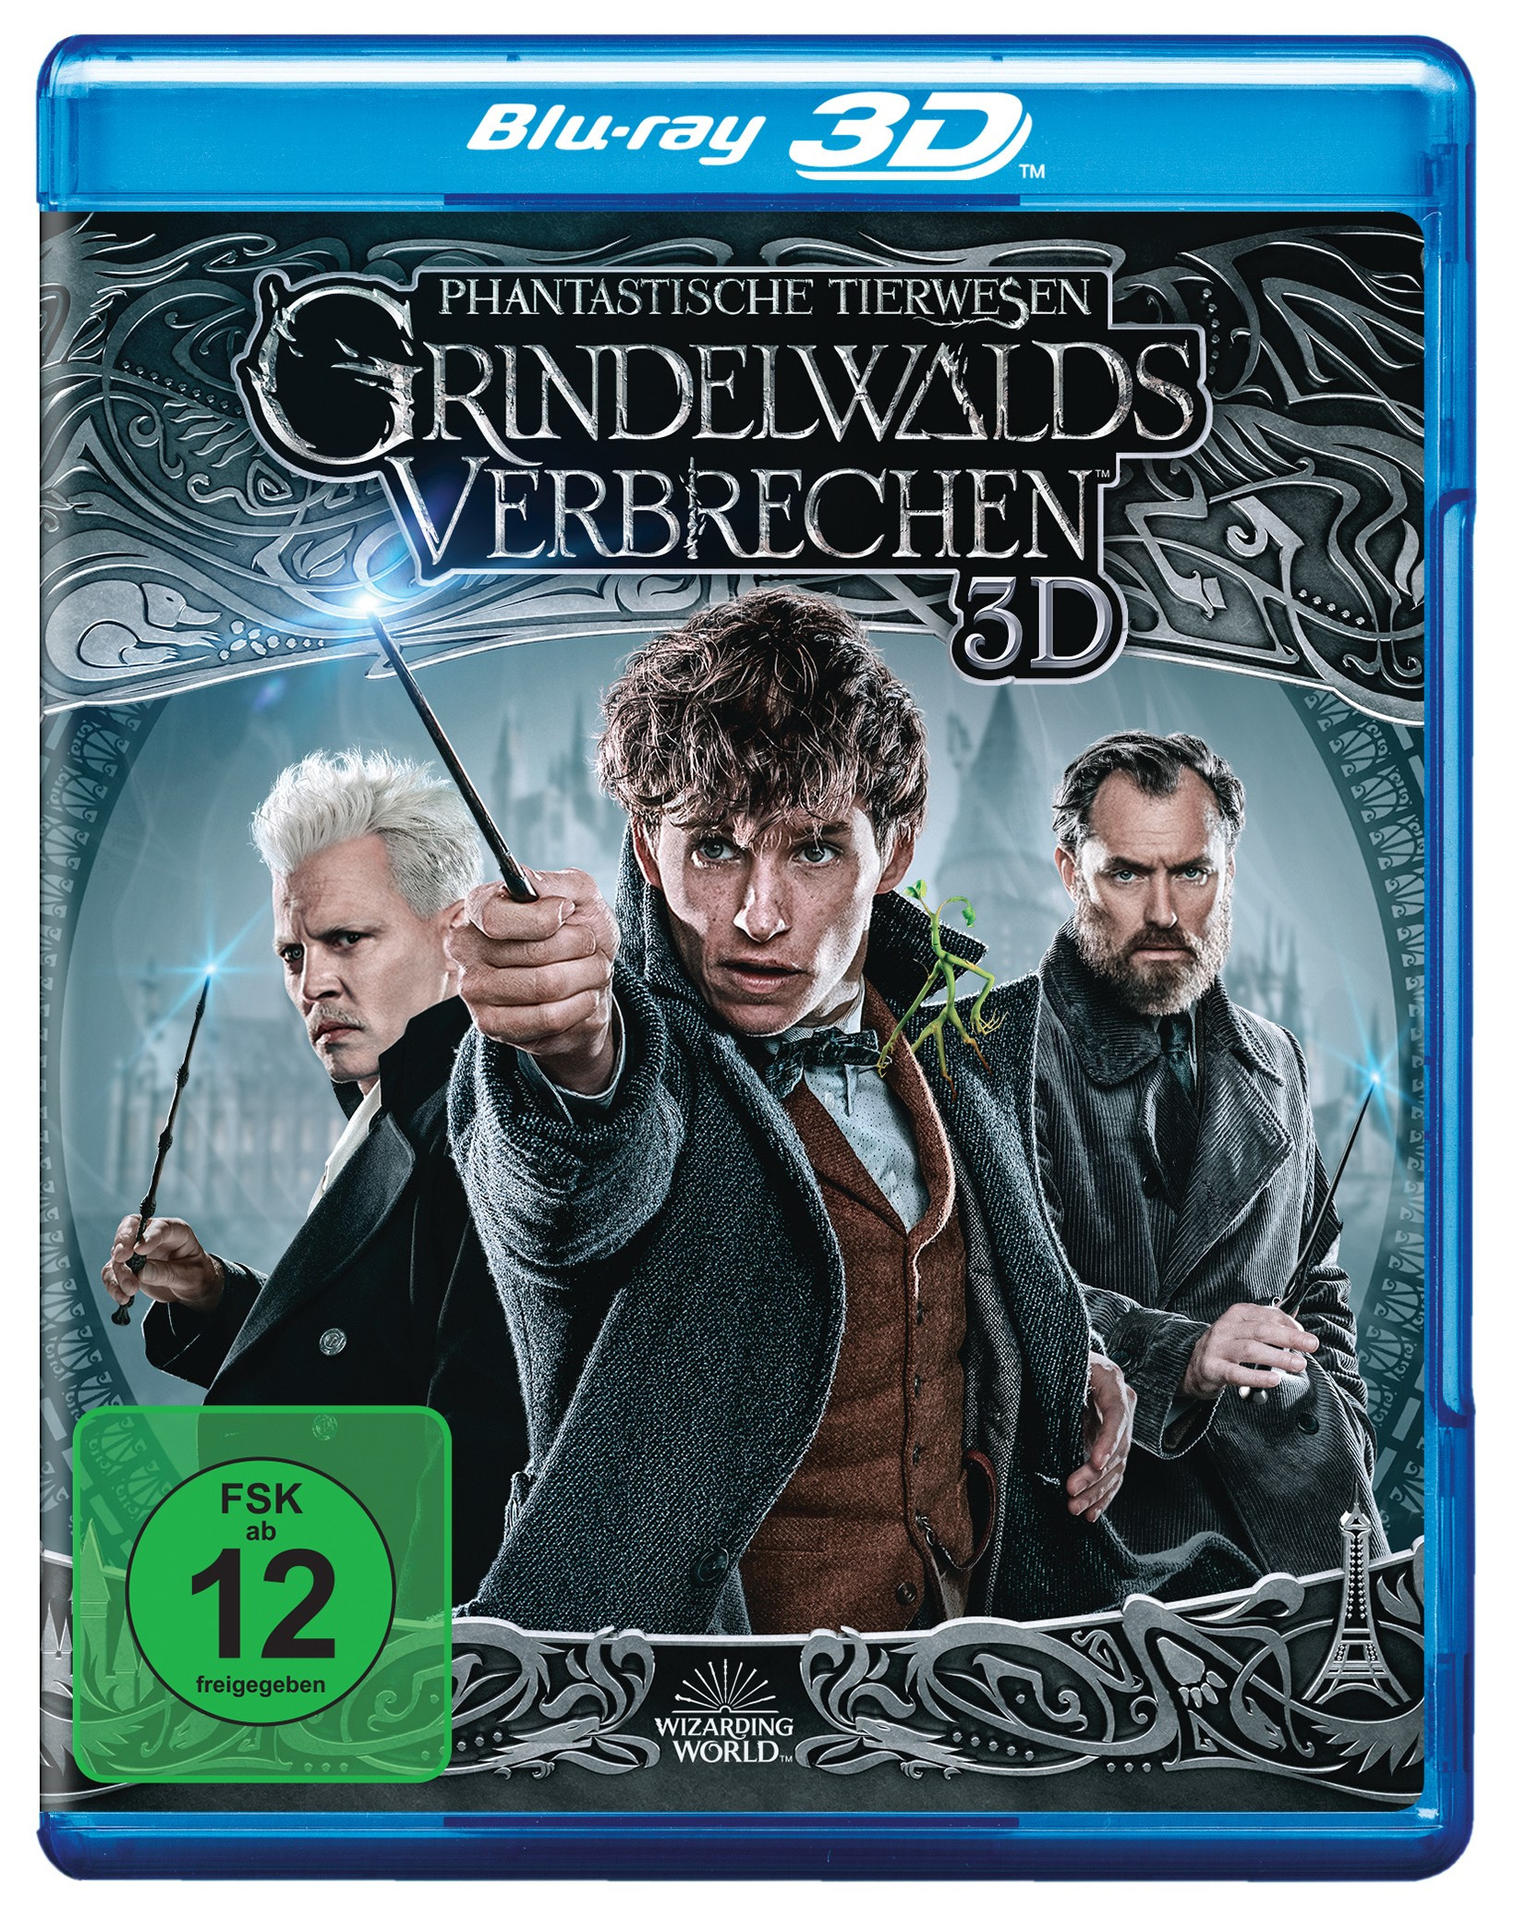 Tierwesen Grindelwalds + Extended Blu-ray 3D Verbrechen Phantastische Cut Kinofassung